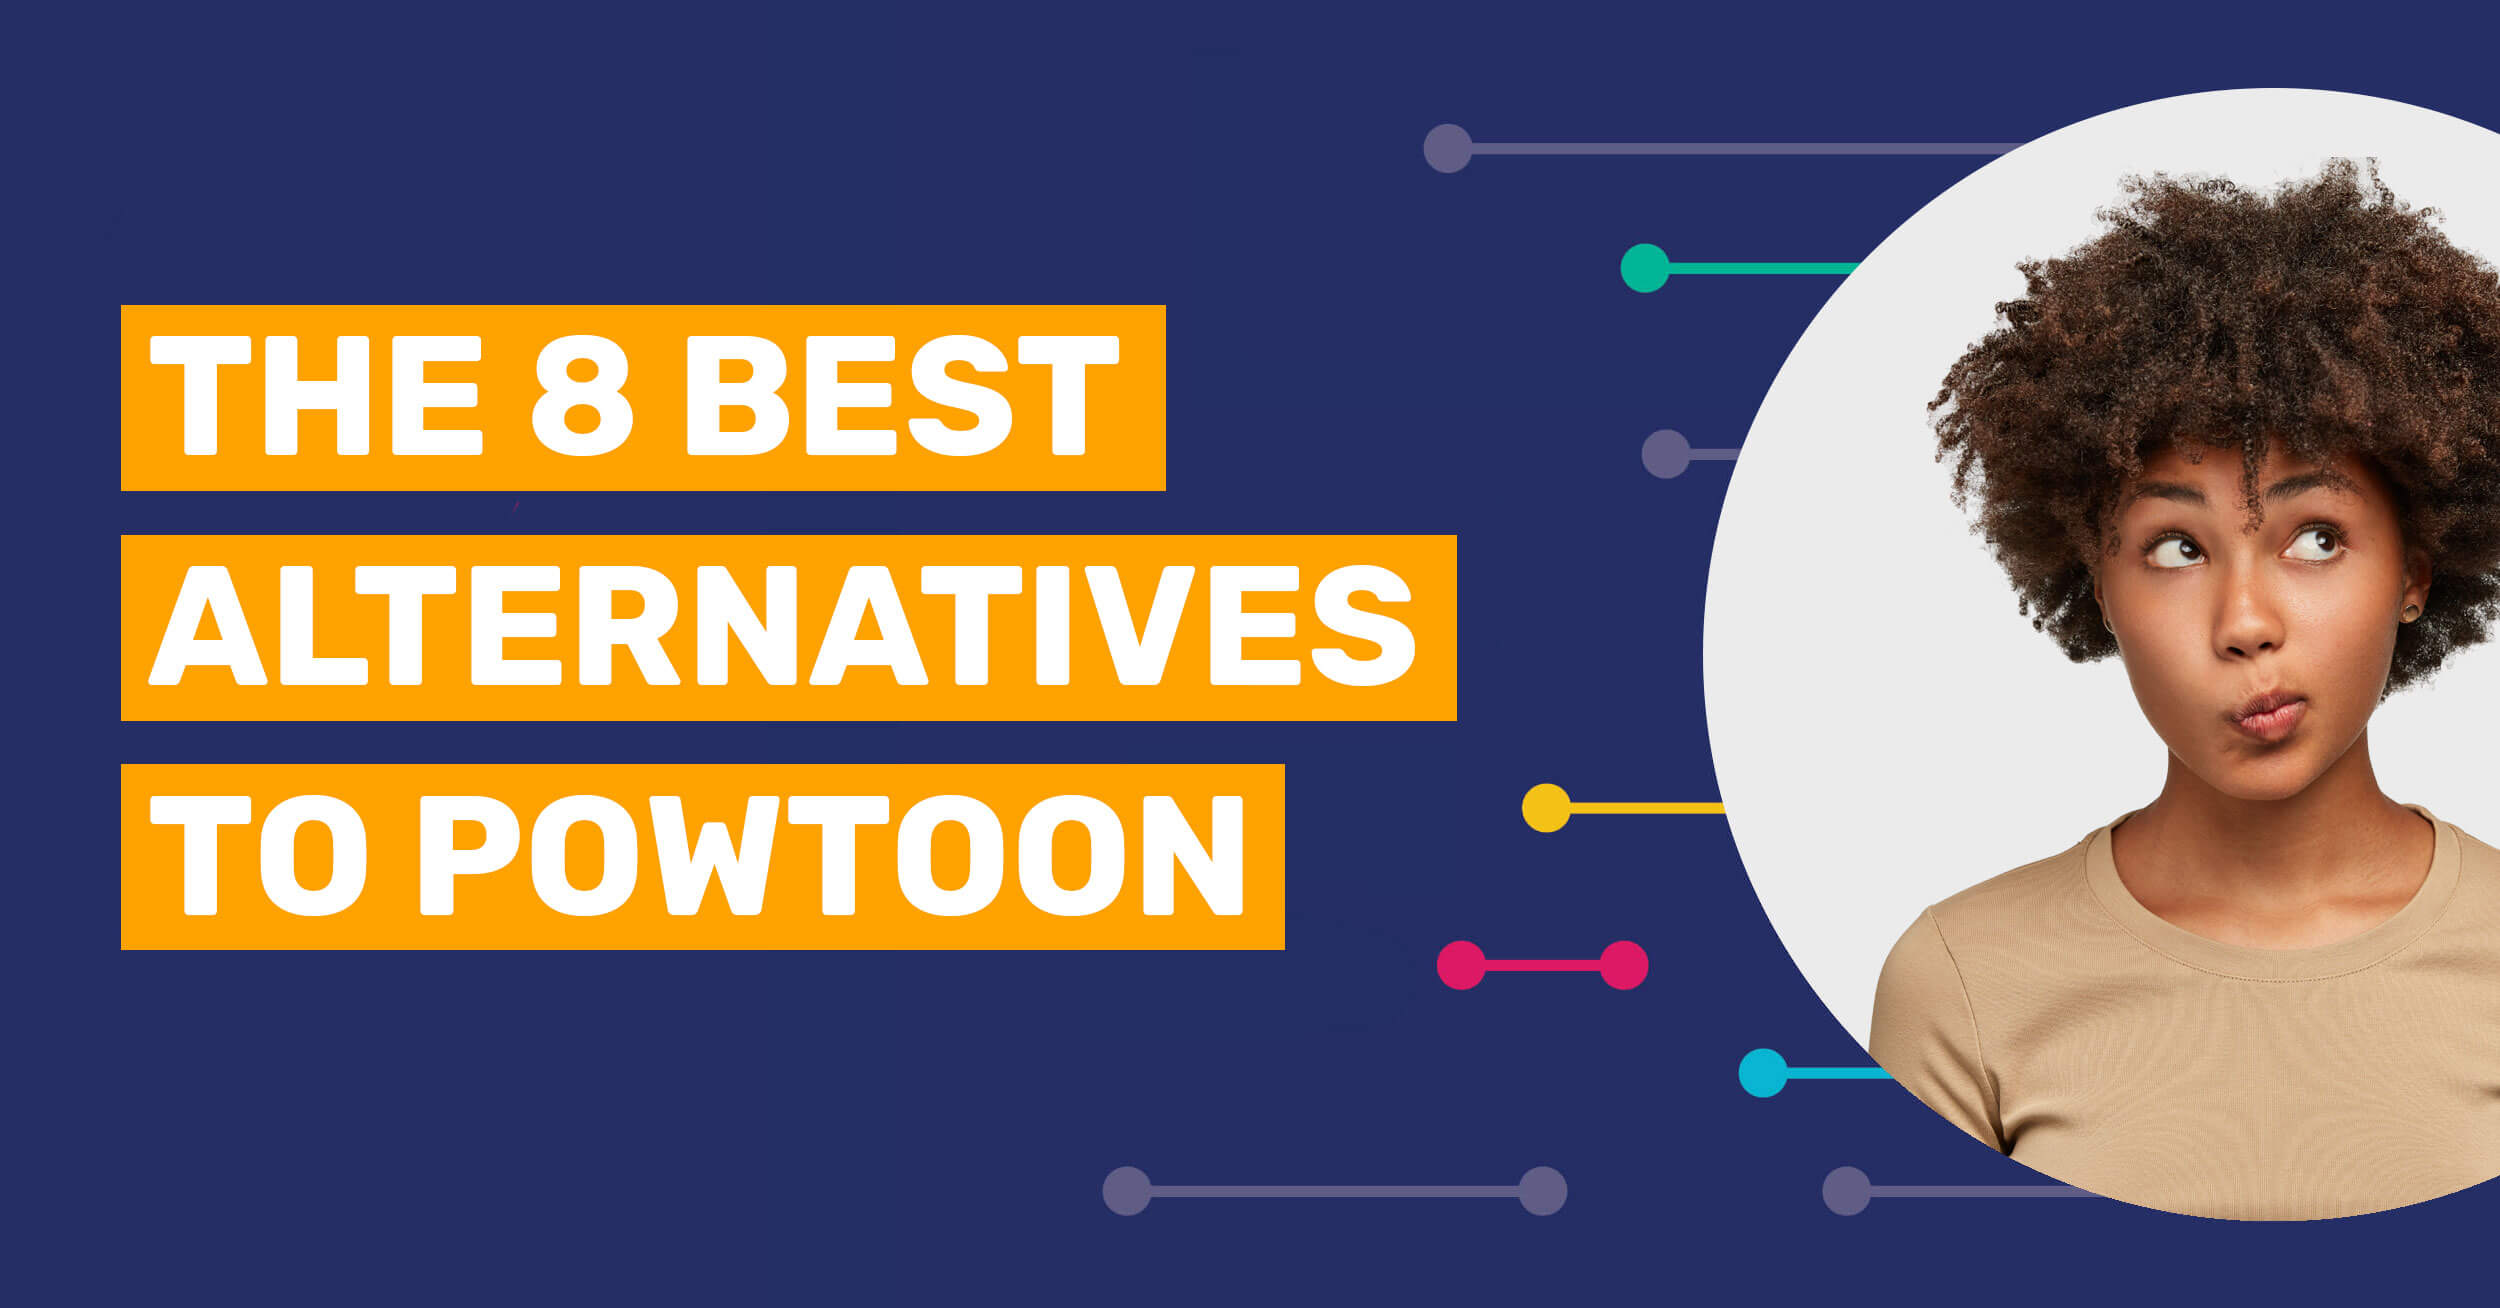 8 alternatives to powtoon